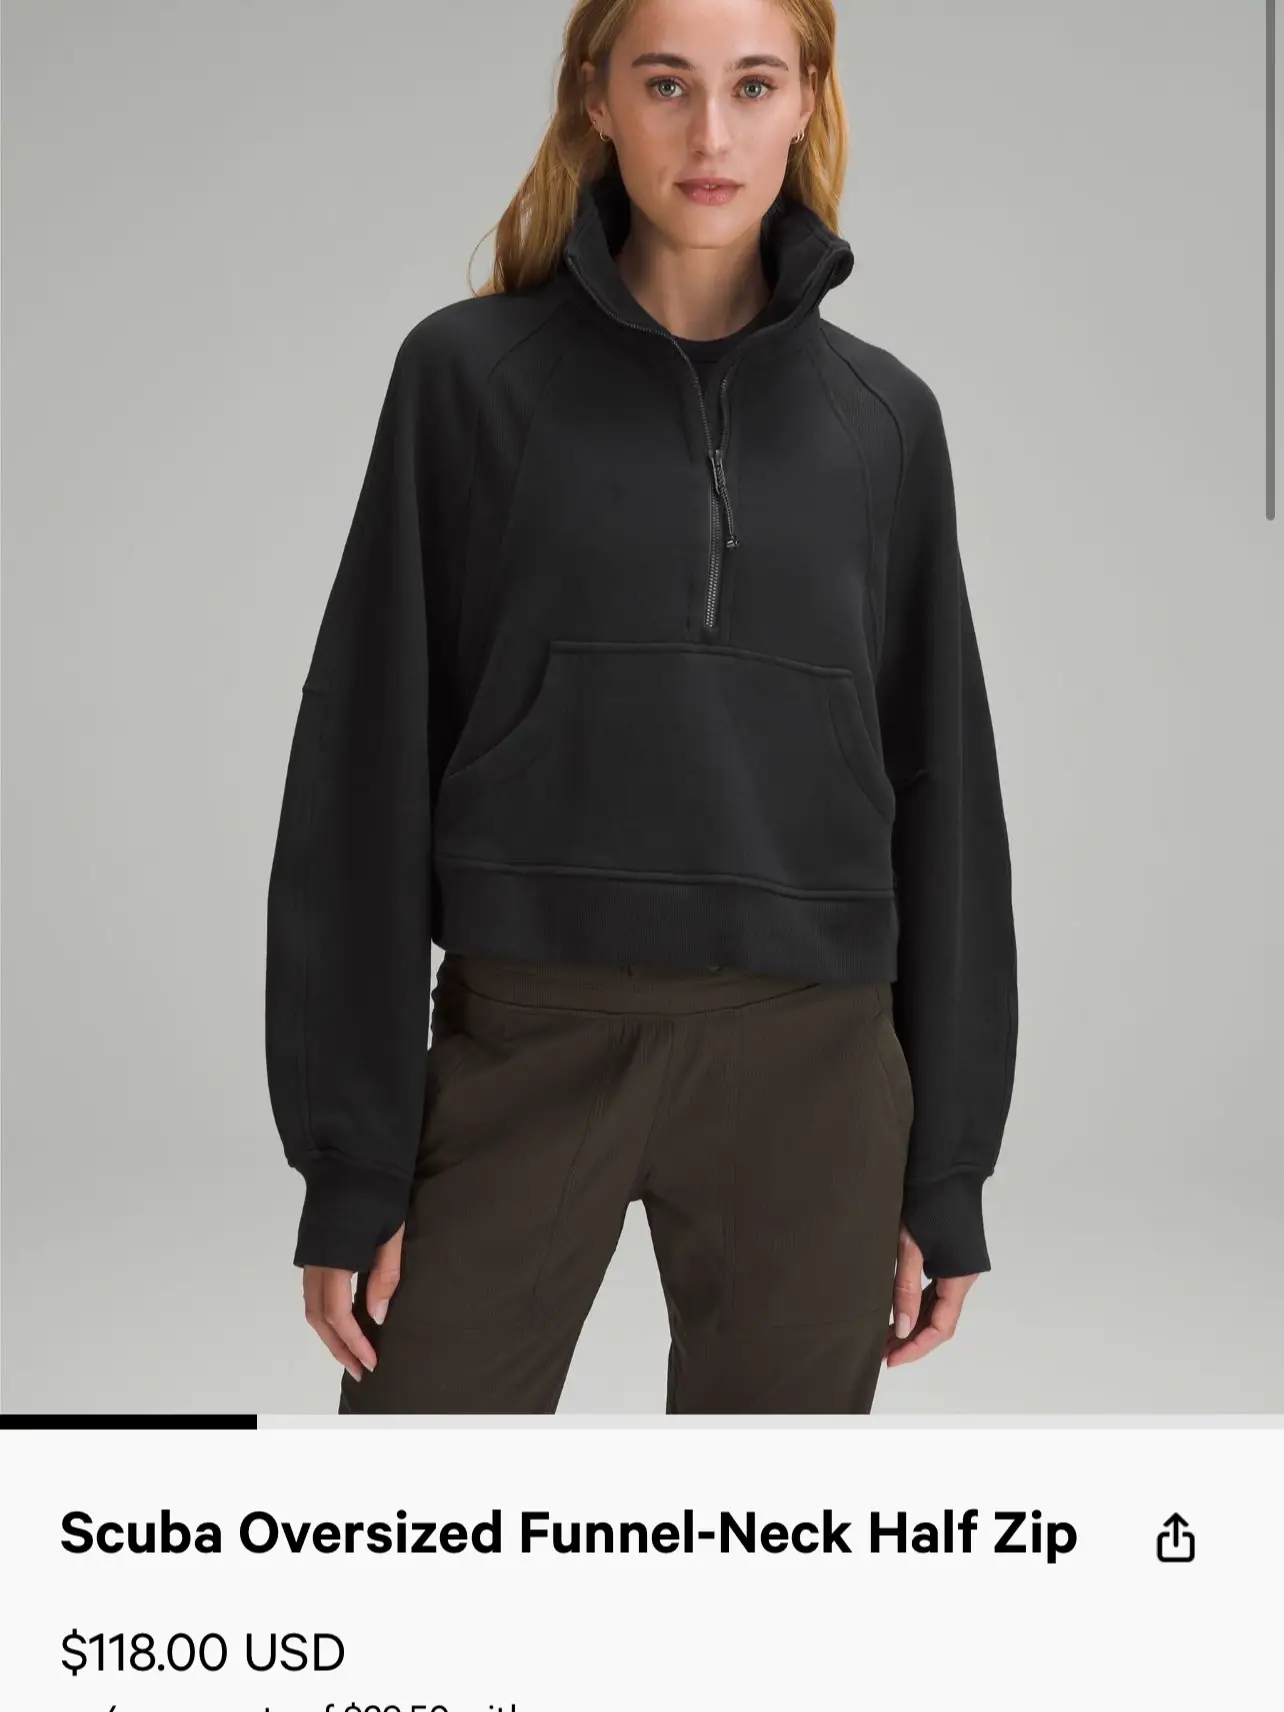 Lululemon Scuba hoodie size 8 - $60 - From Jenni